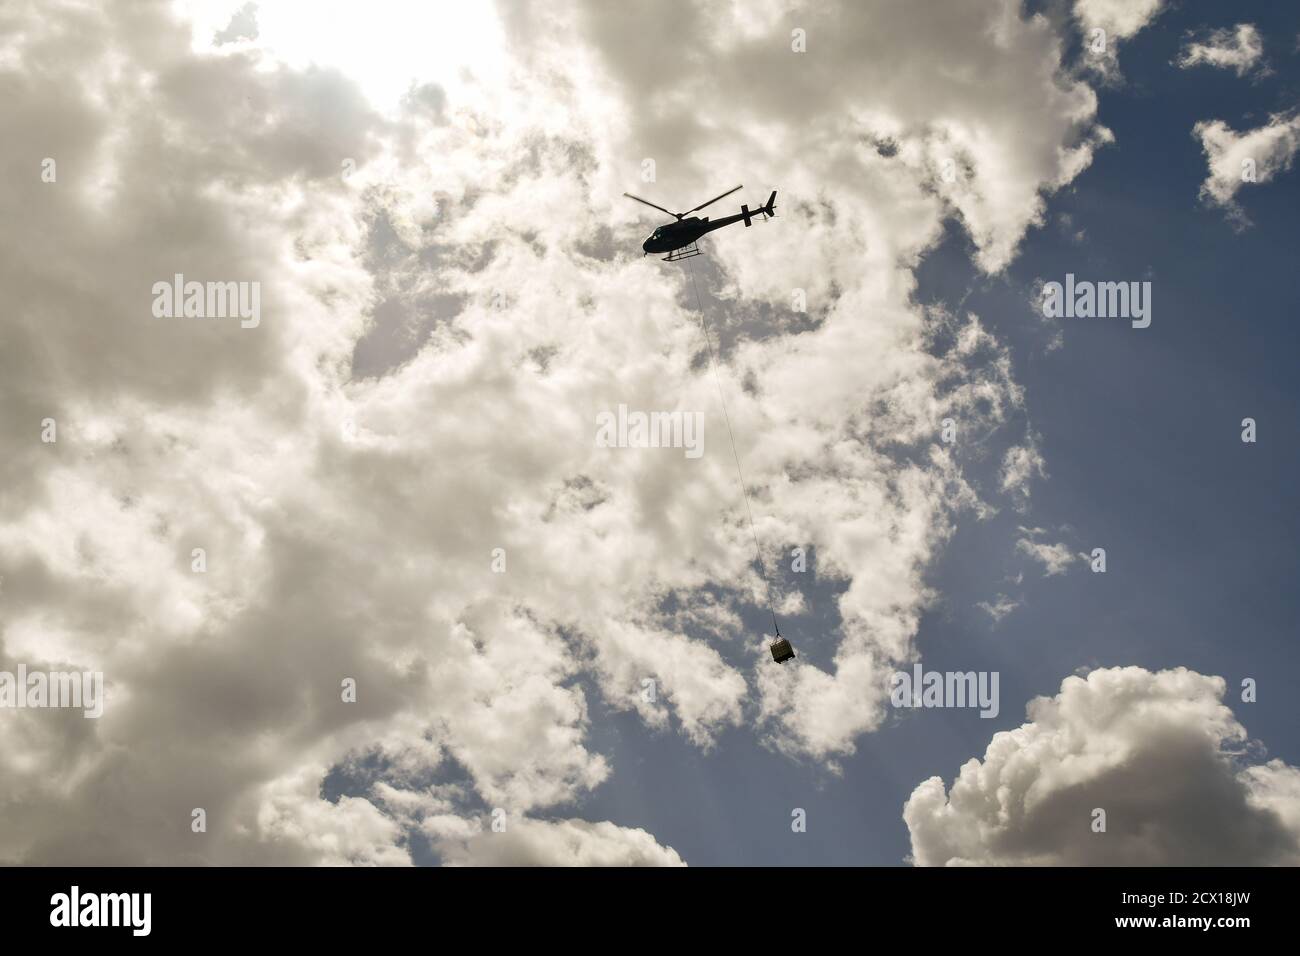 Vista de contraluz de la silueta de un helicóptero que transporta la carga contra el cielo nublado, Courmayeur, Valle de Aosta, Italia Foto de stock